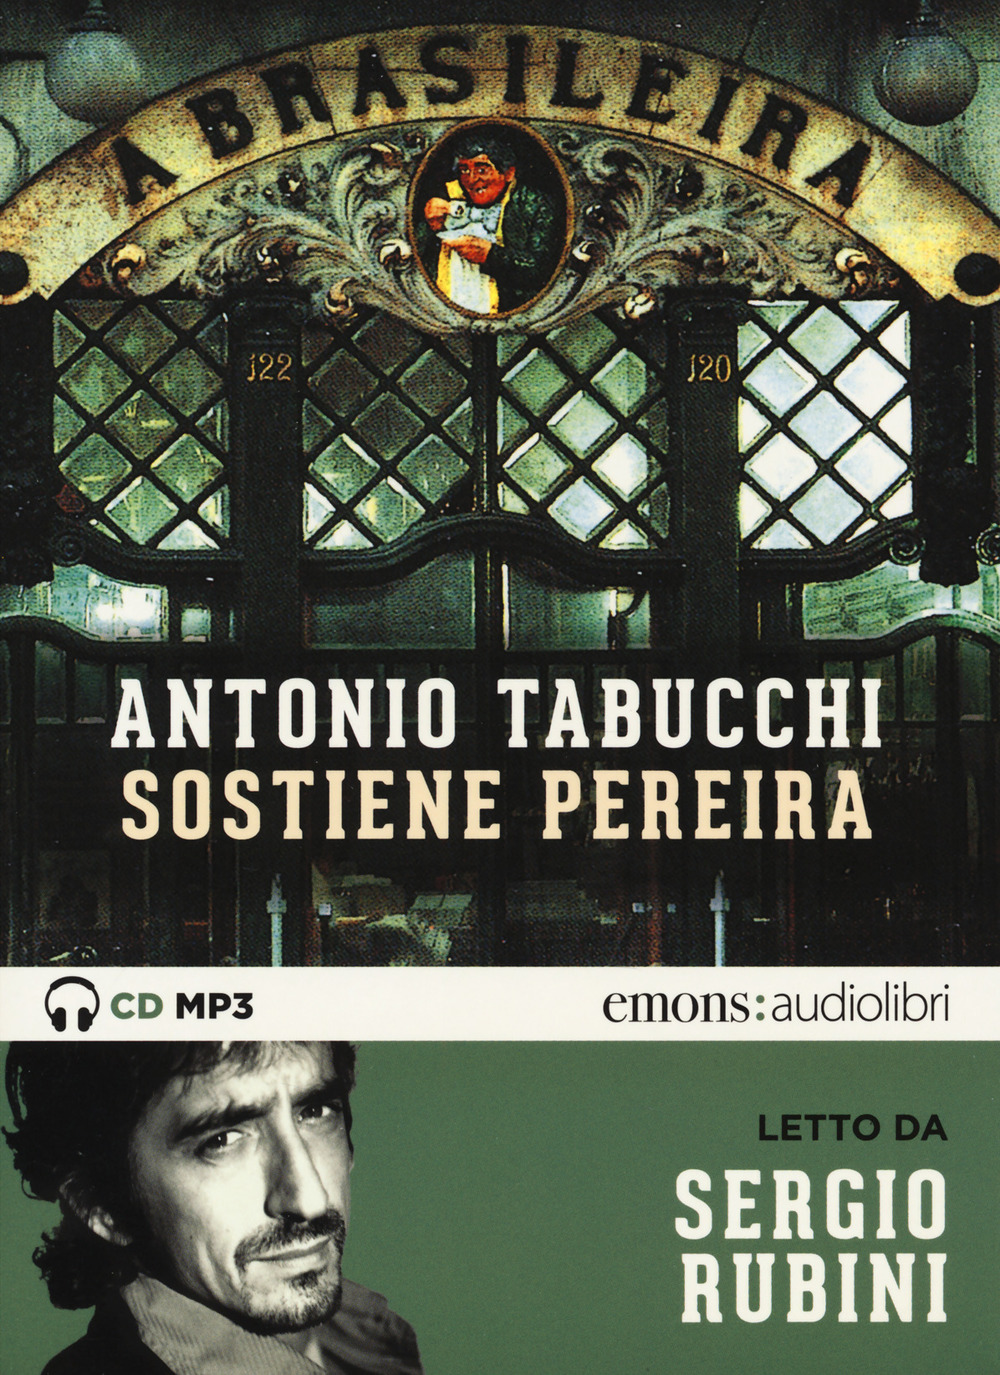 Audiolibro Antonio Tabucchi - Sostiene Pereira Letto Da Sergio Rubini. Audiolibro. CD Audio Formato MP3 NUOVO SIGILLATO, EDIZIONE DEL 29/08/2019 SUBITO DISPONIBILE